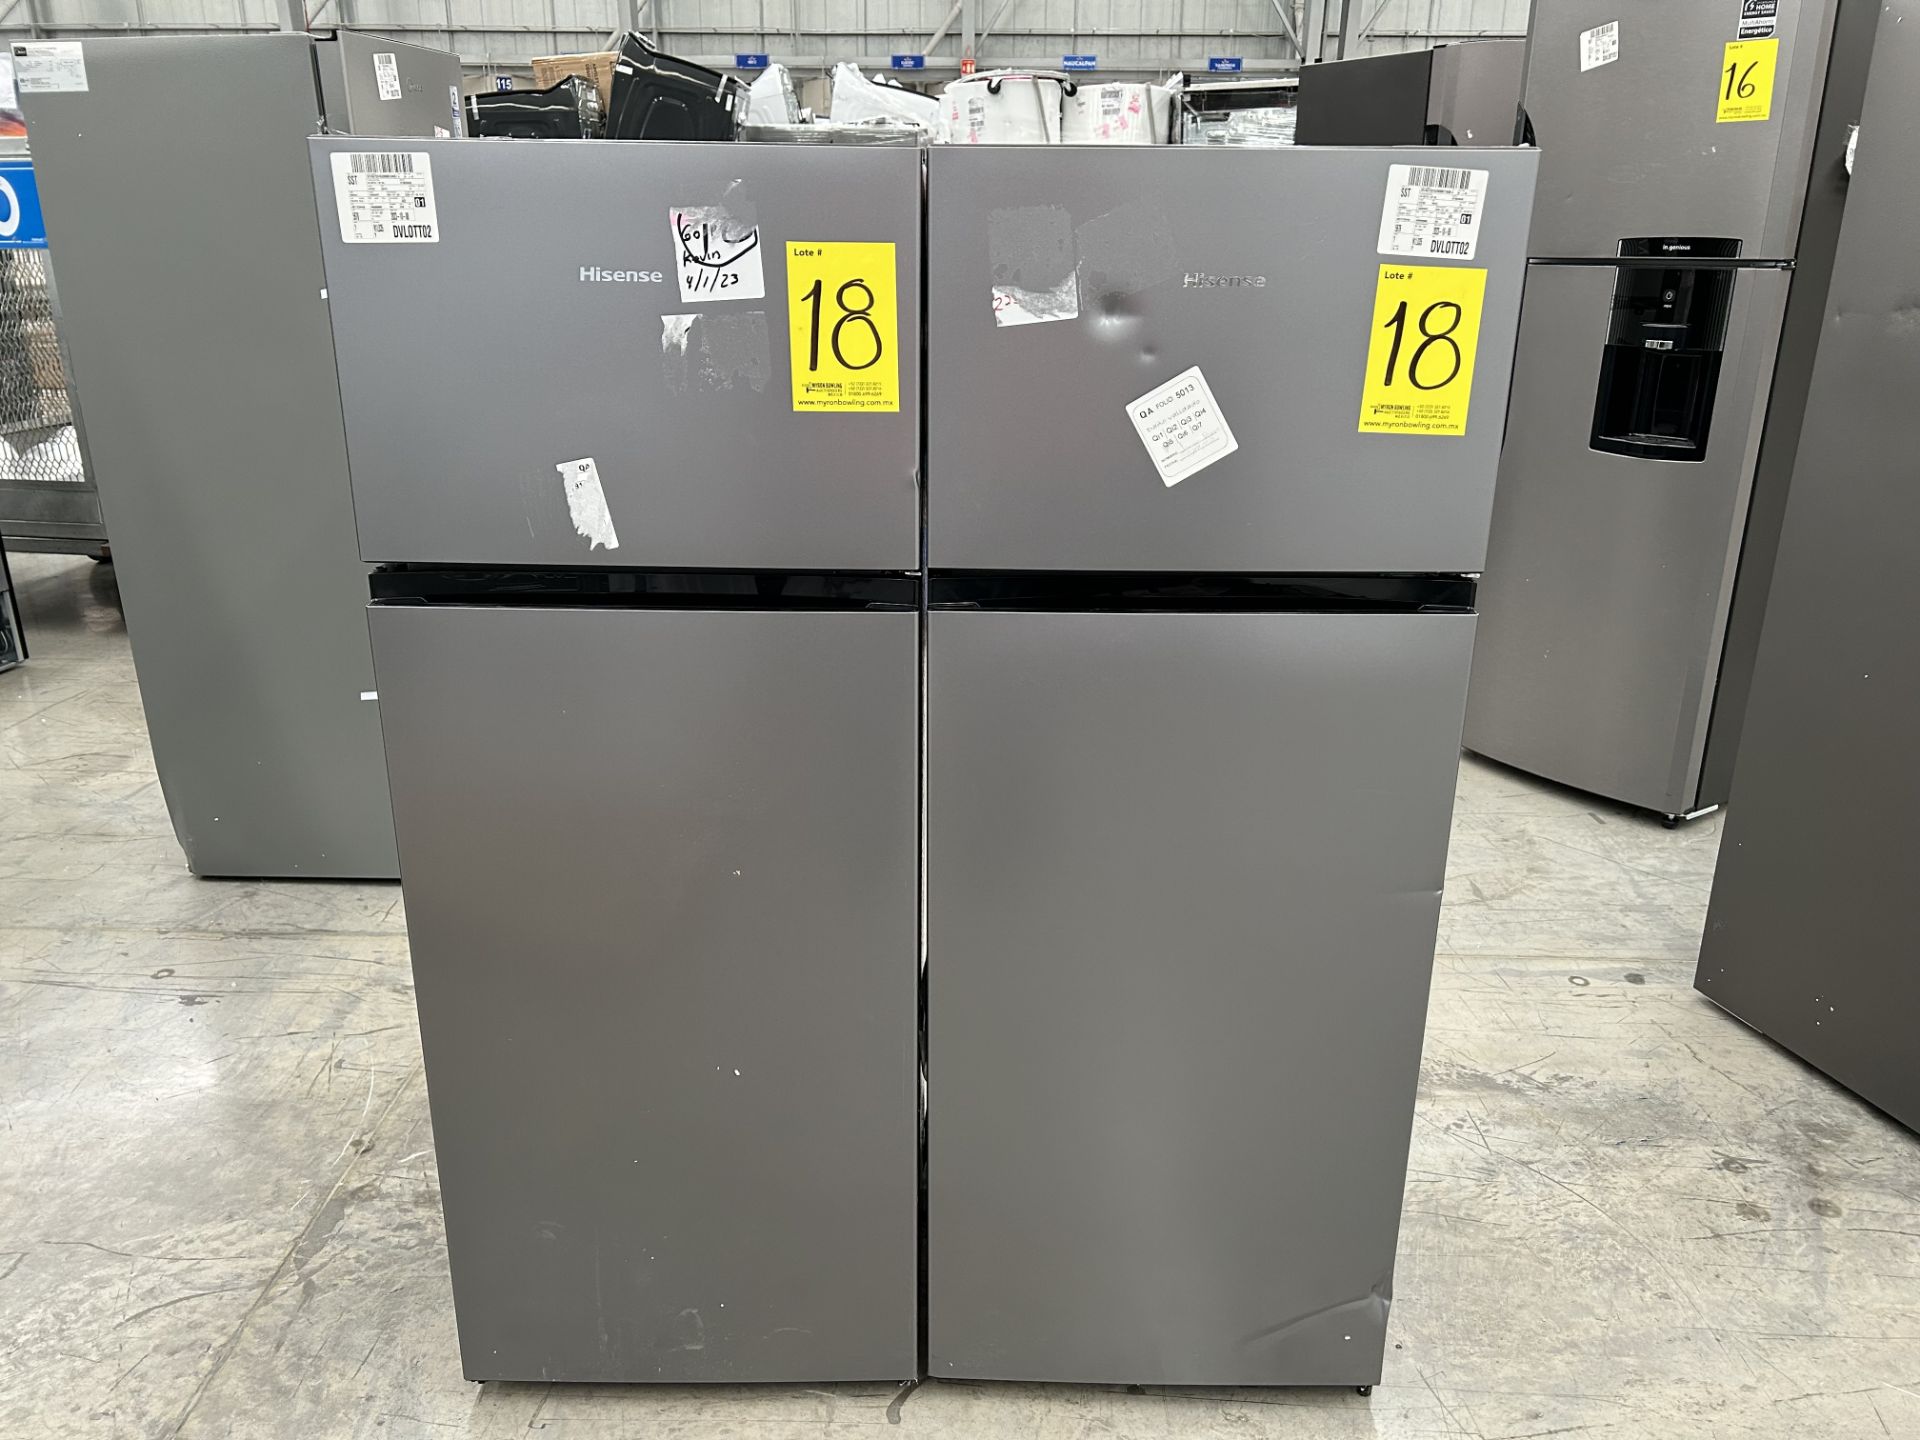 Lote de 2 Refrigeradores contiene: 1 Refrigerador Marca HISENSE, Modelo RT80D6AGX, Serie 20358, Col